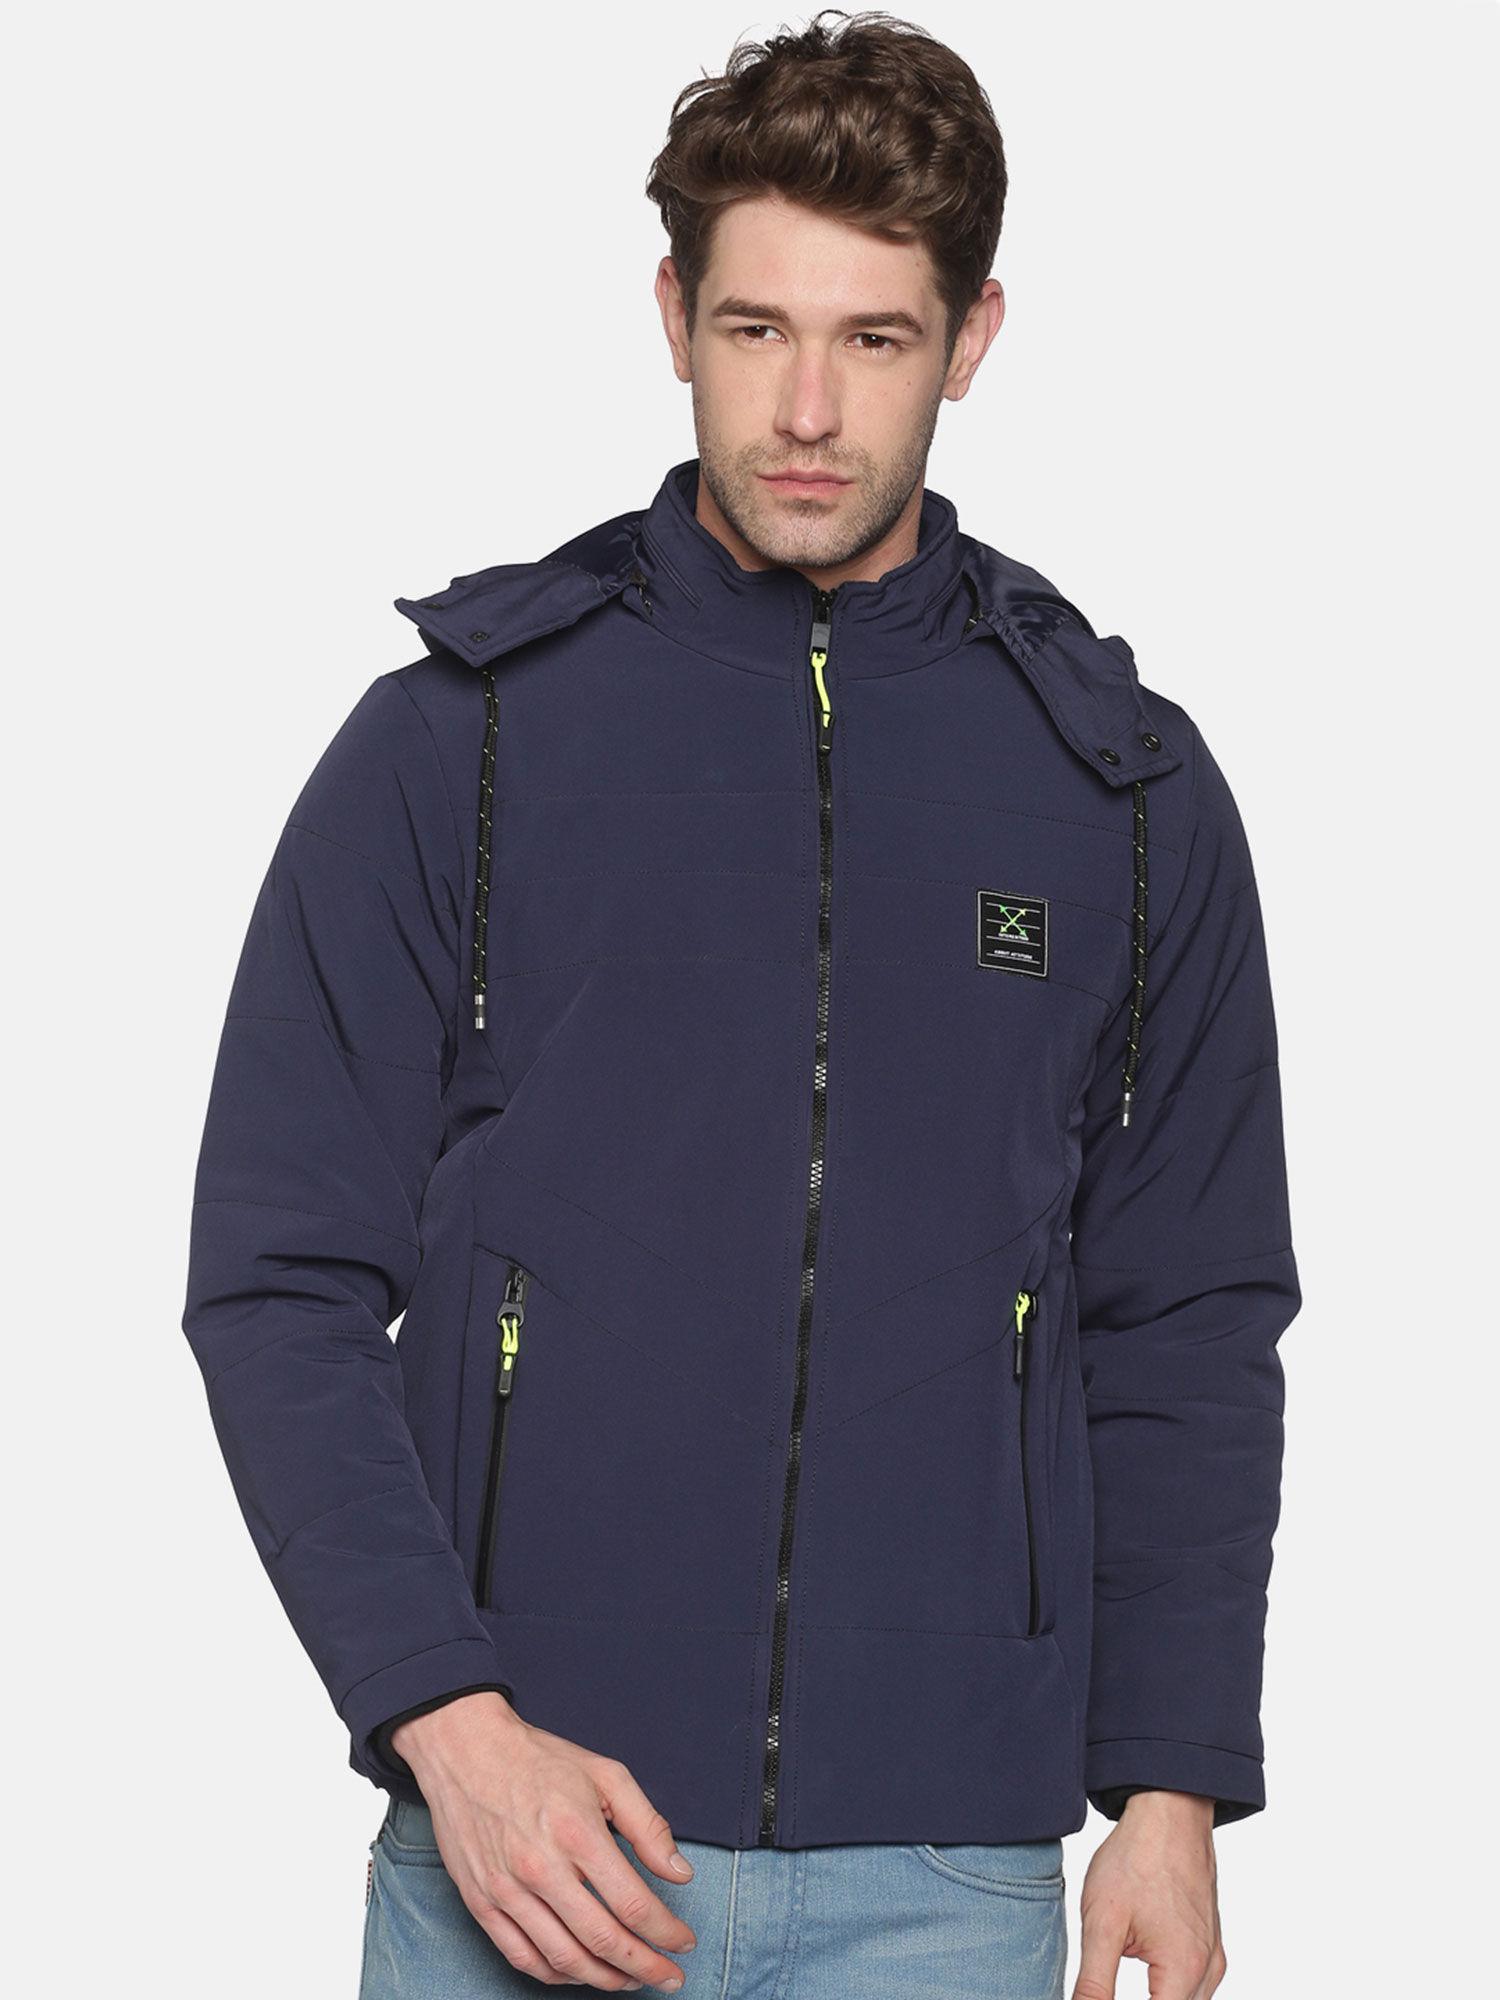 men's casual navy solid jacket